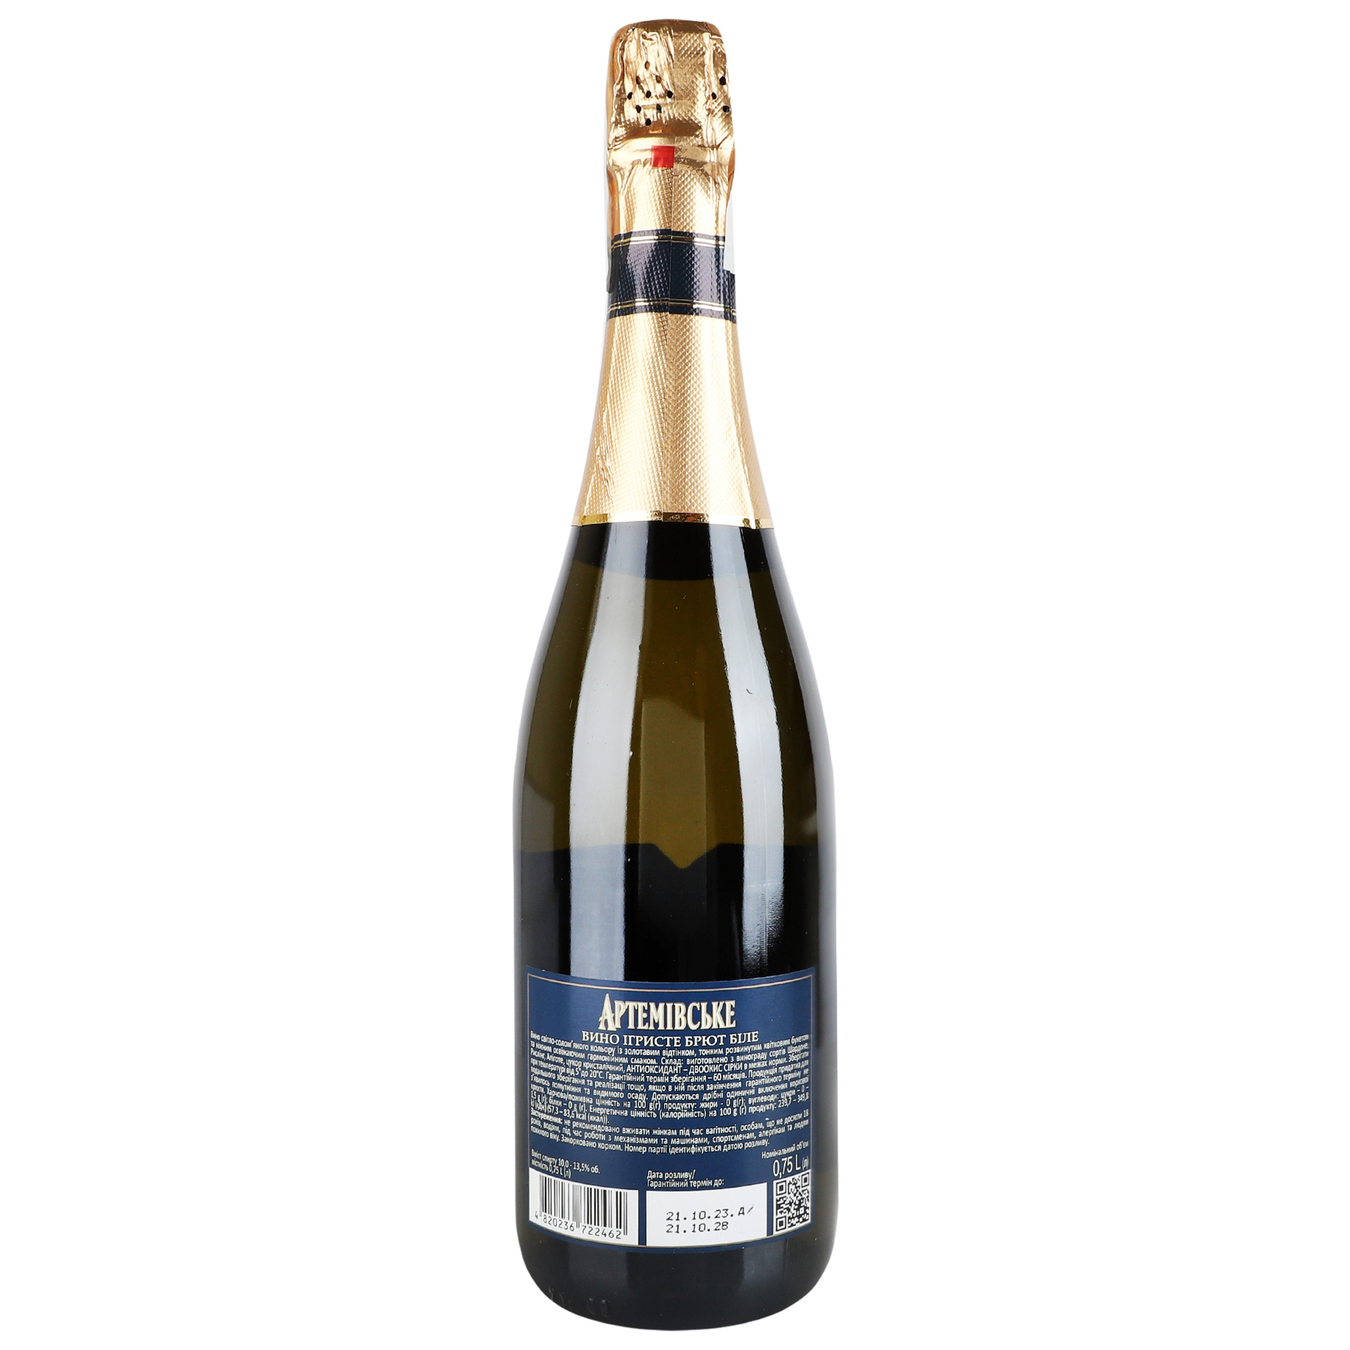 Sparkling wine Artwinery Artemivsʹke aged white brut 13,5% 0,75l 3